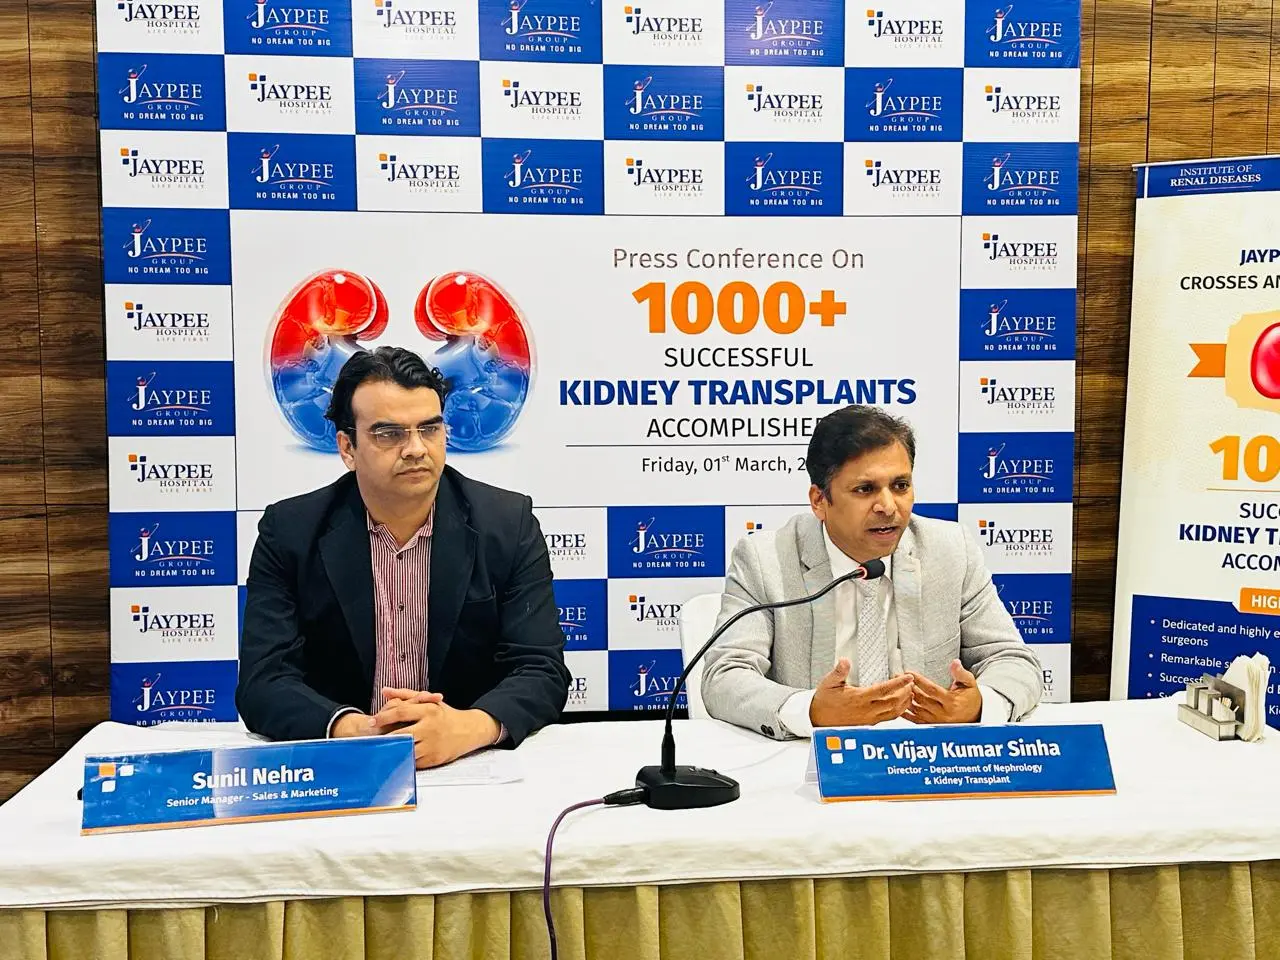 जेपी हॉस्पिटल ने 1000 से अधिक सफल किडनी ट्रांसप्लांट कर हासिल की उपलब्धि